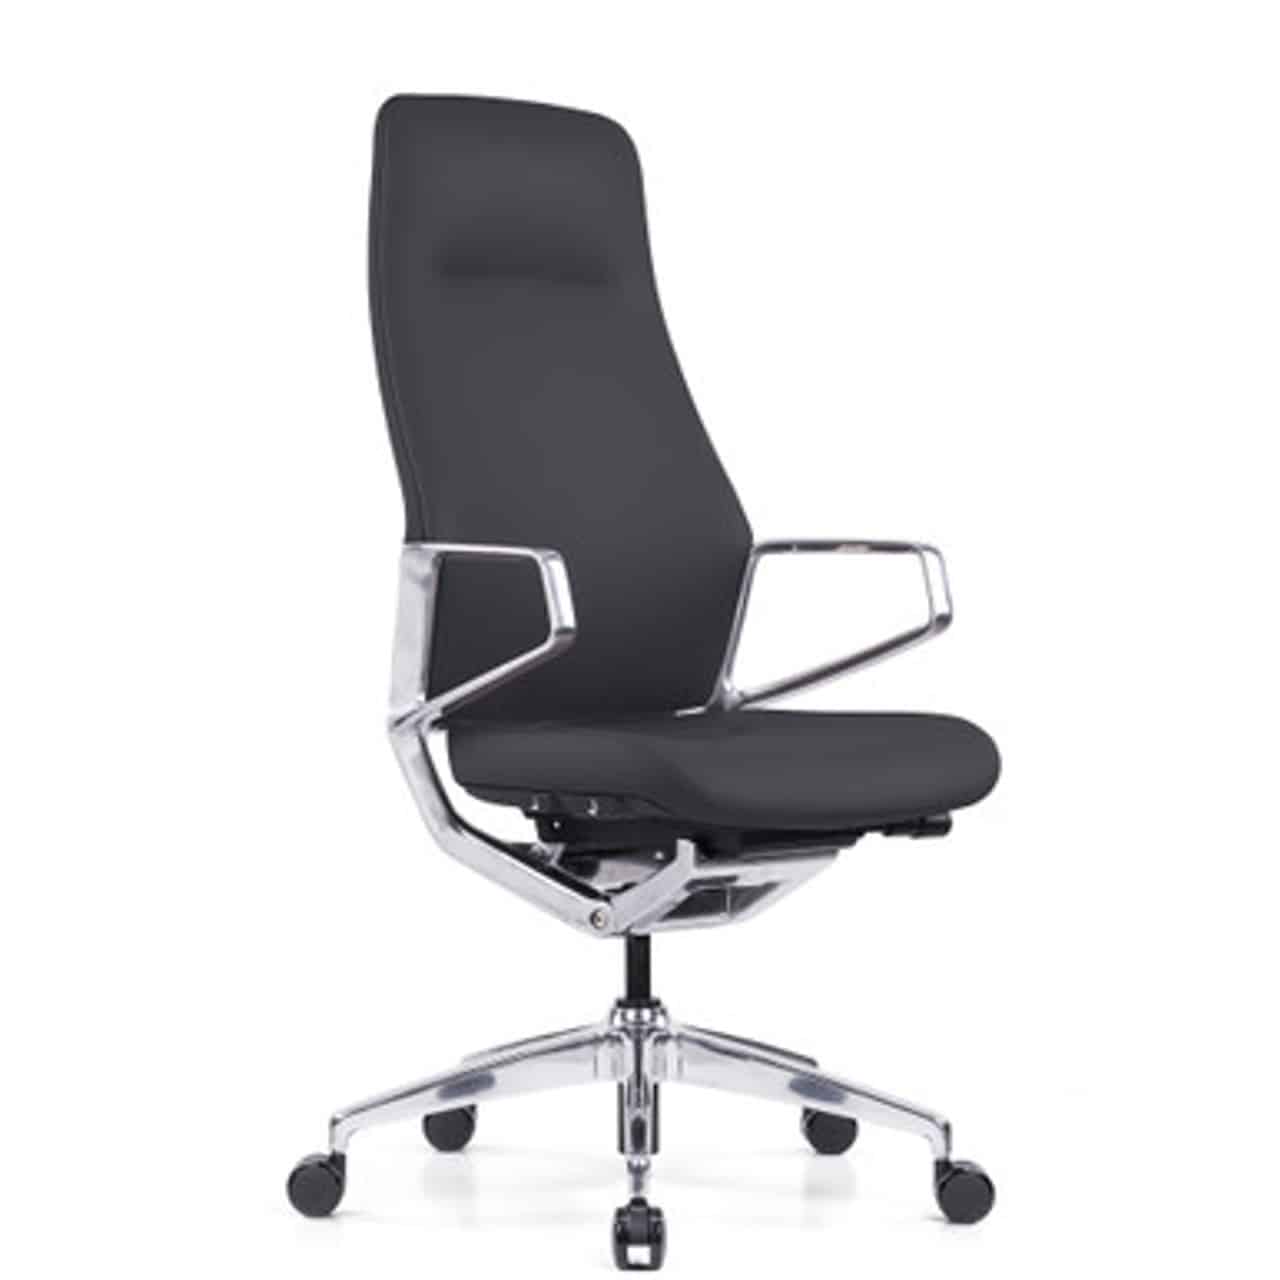 black veneto office chair high back modern